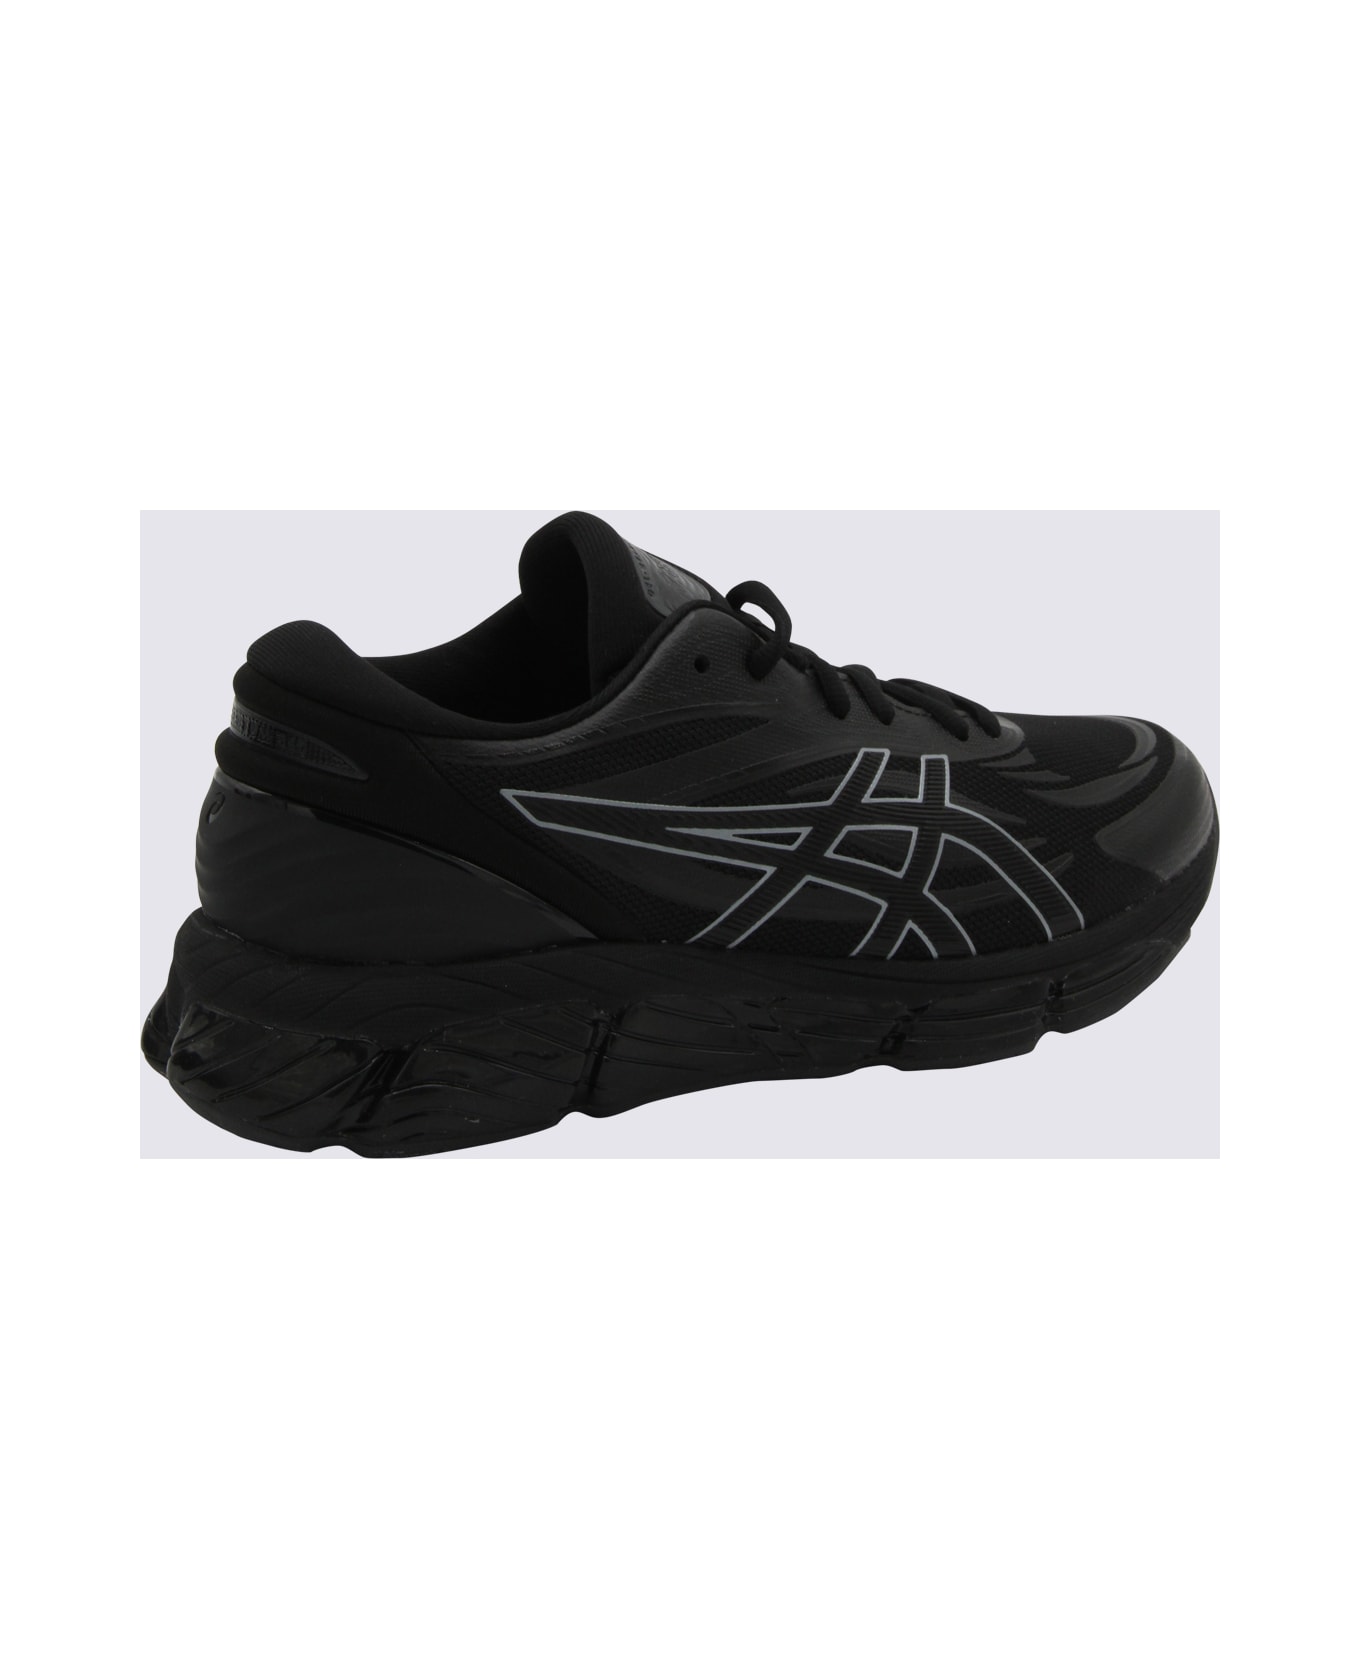 Asics Black Gel Quantun 360 Sneakers - BLACKBLACK